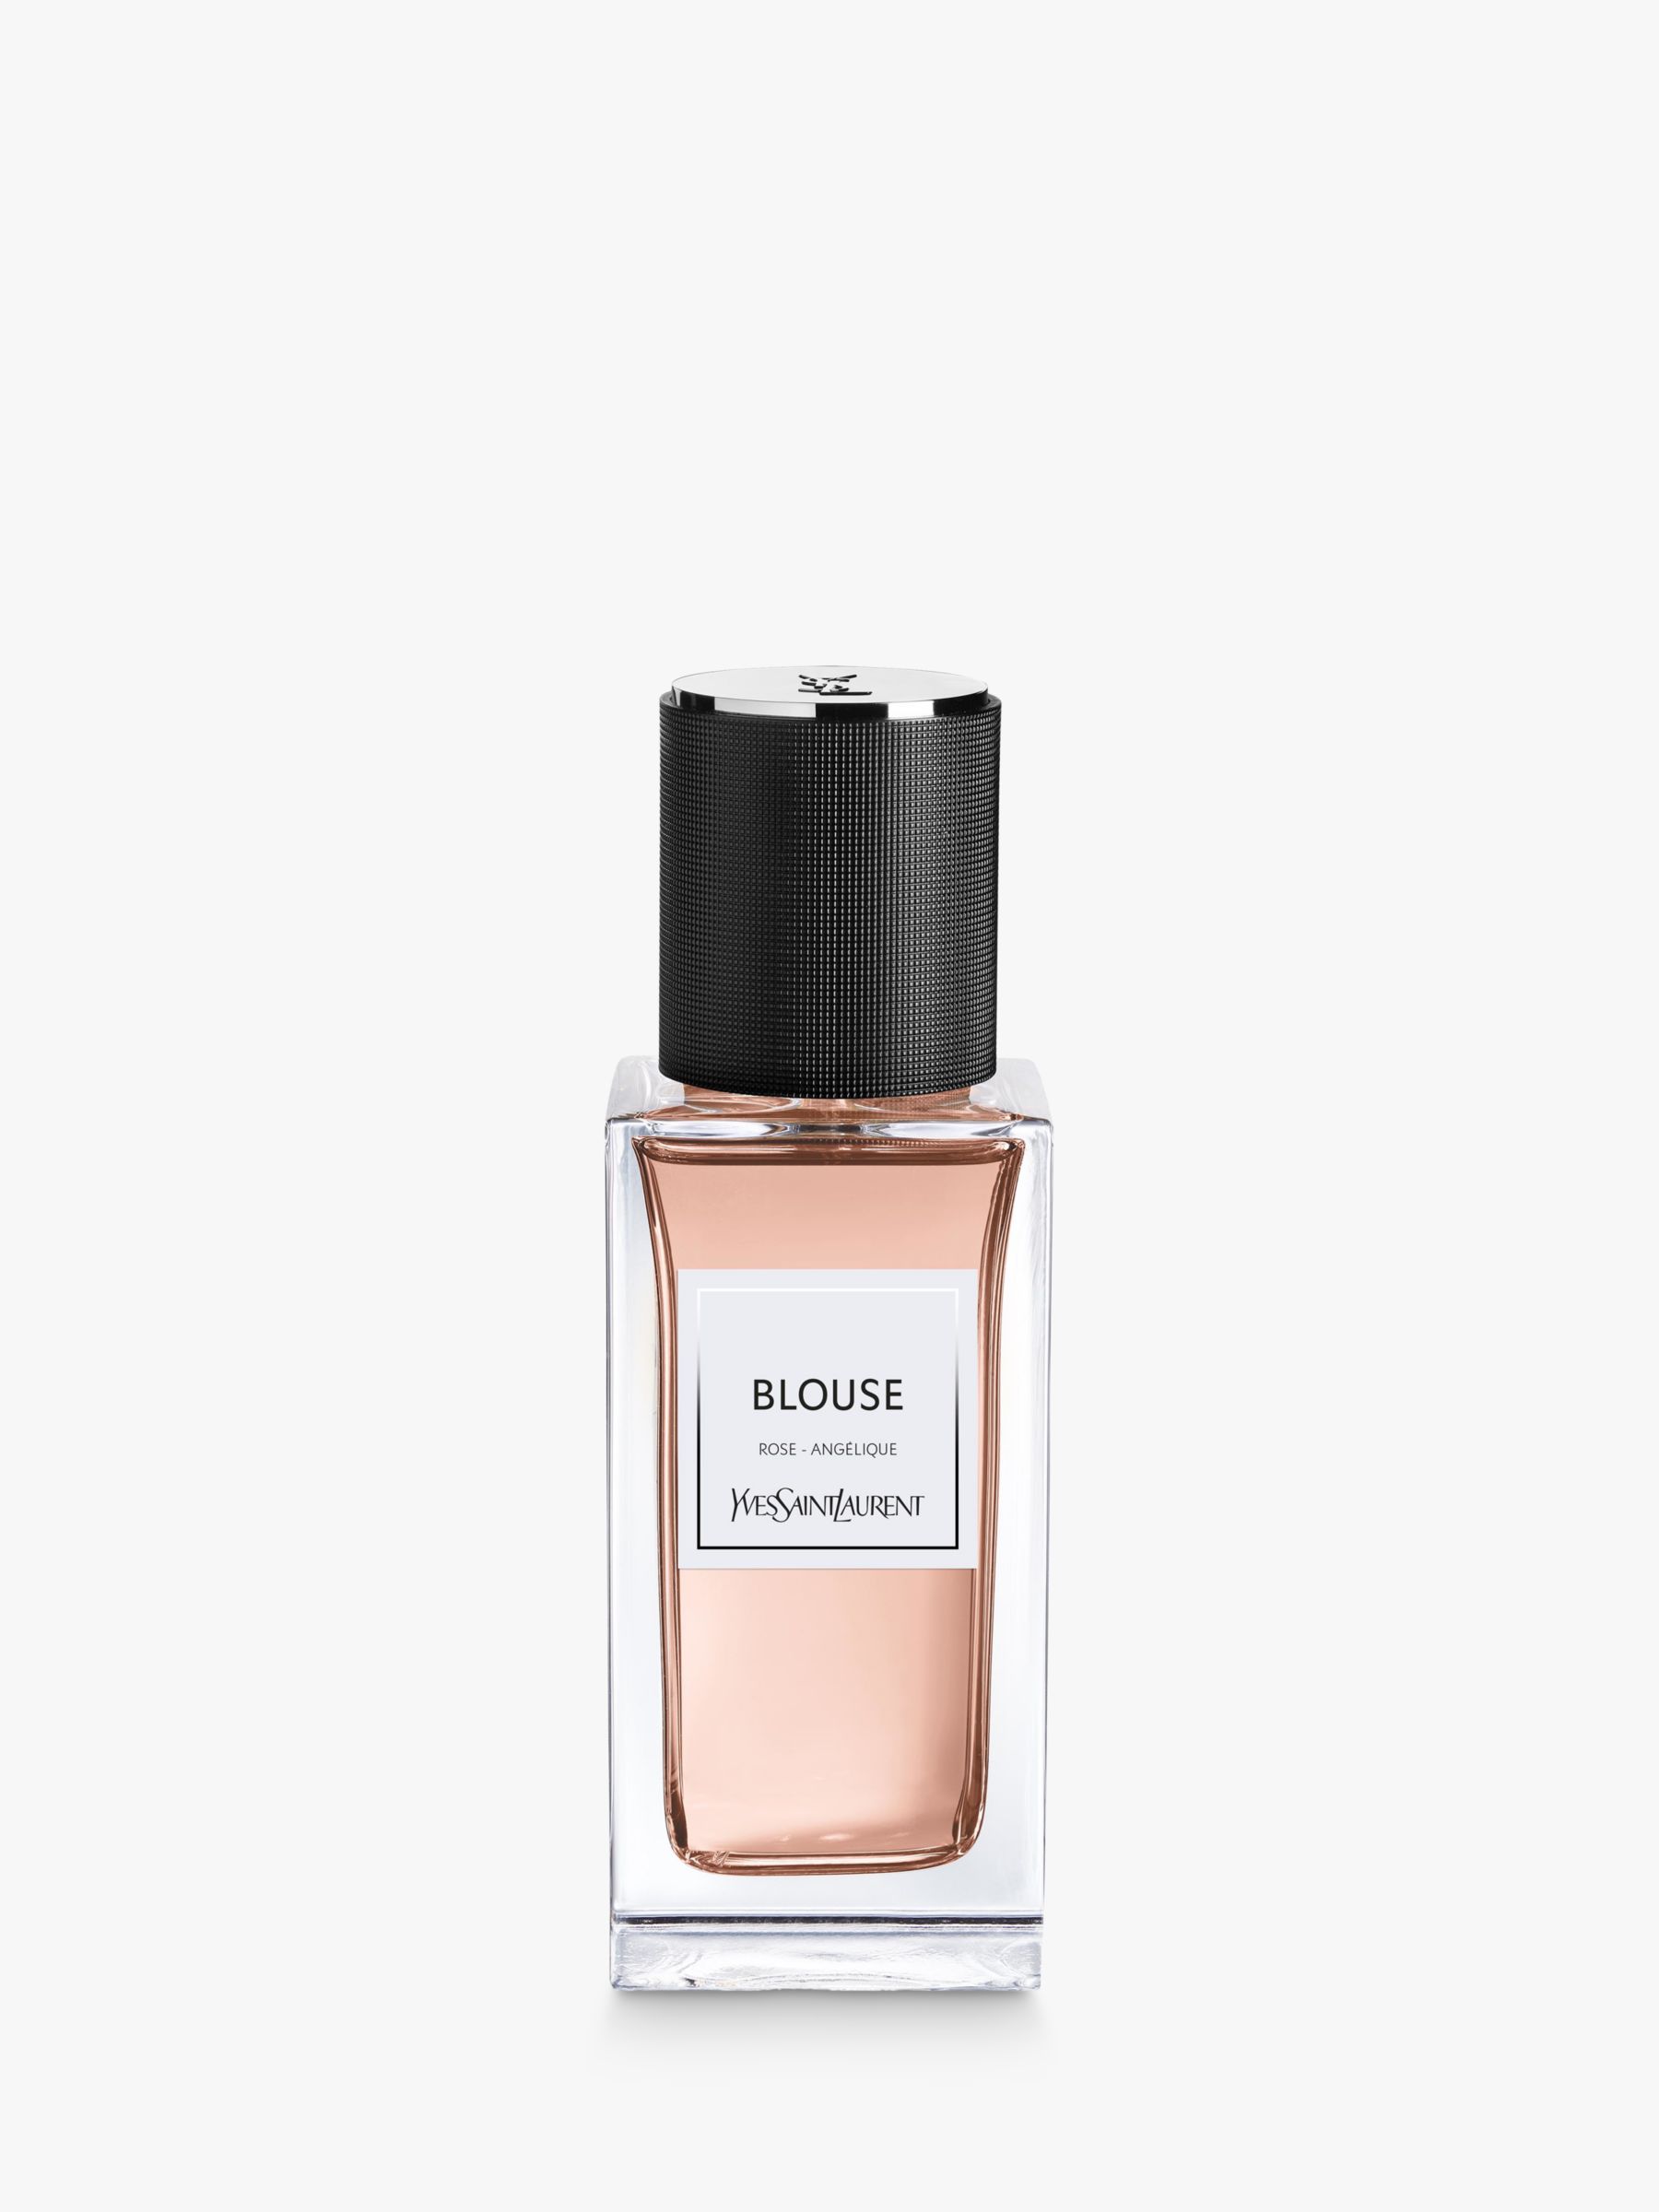 Yves Saint Laurent Blouse Eau de Parfum, 75ml at John Lewis & Partners